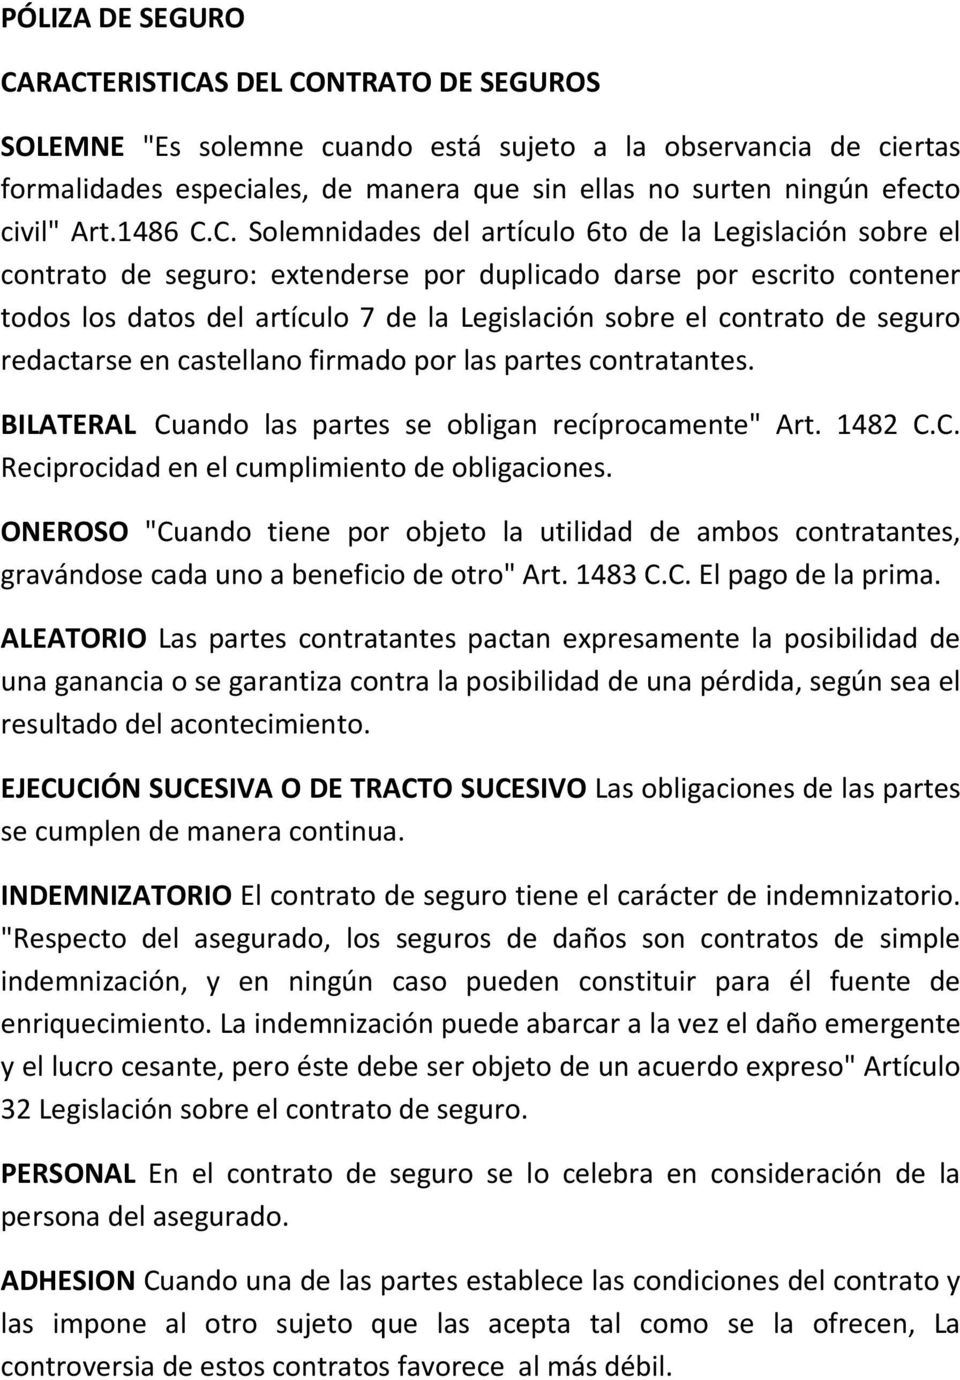 C. Solemnidades del artículo 6to de la Legislación sobre el contrato de seguro: extenderse por duplicado darse por escrito contener todos los datos del artículo 7 de la Legislación sobre el contrato